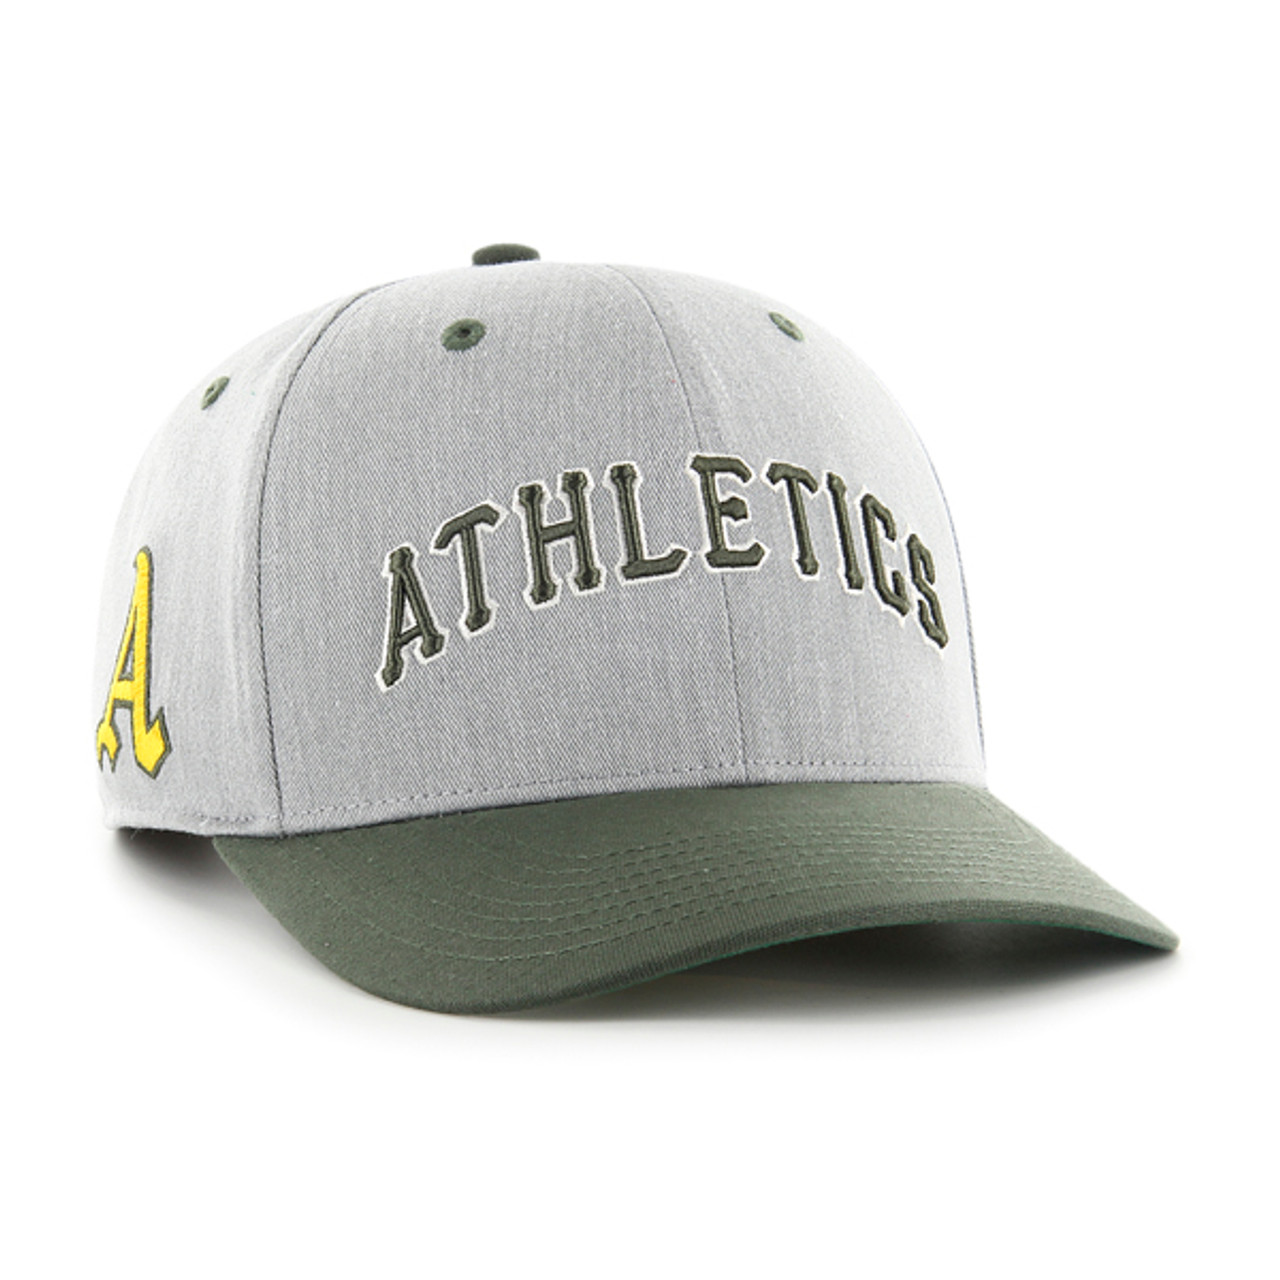 oakland athletics cap